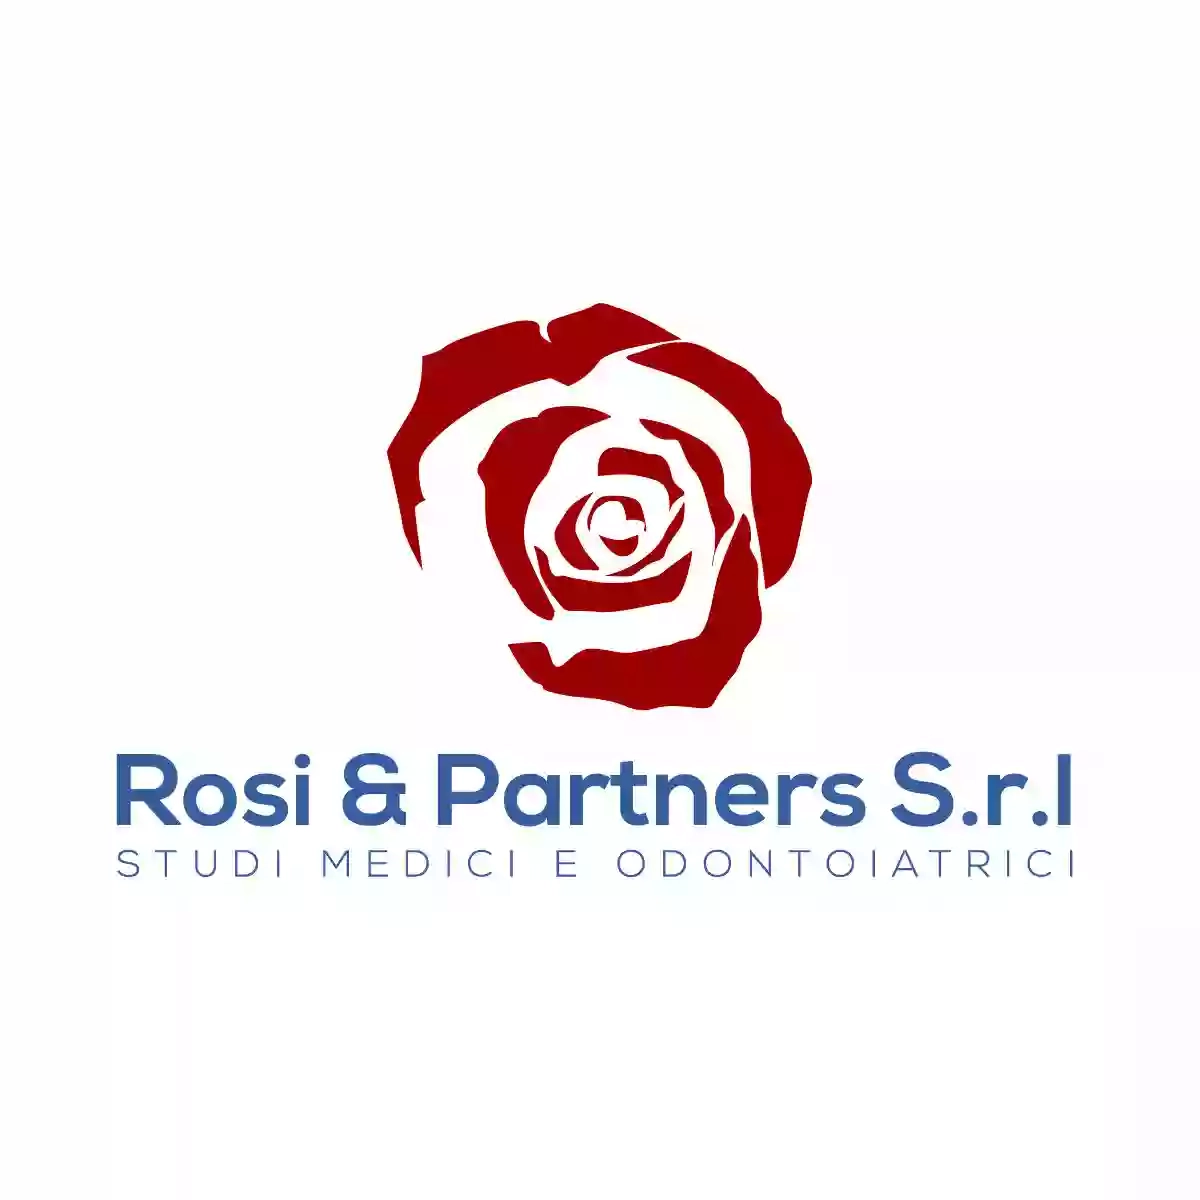 Rosi & Partners Studi Medici e Odontoiatrici